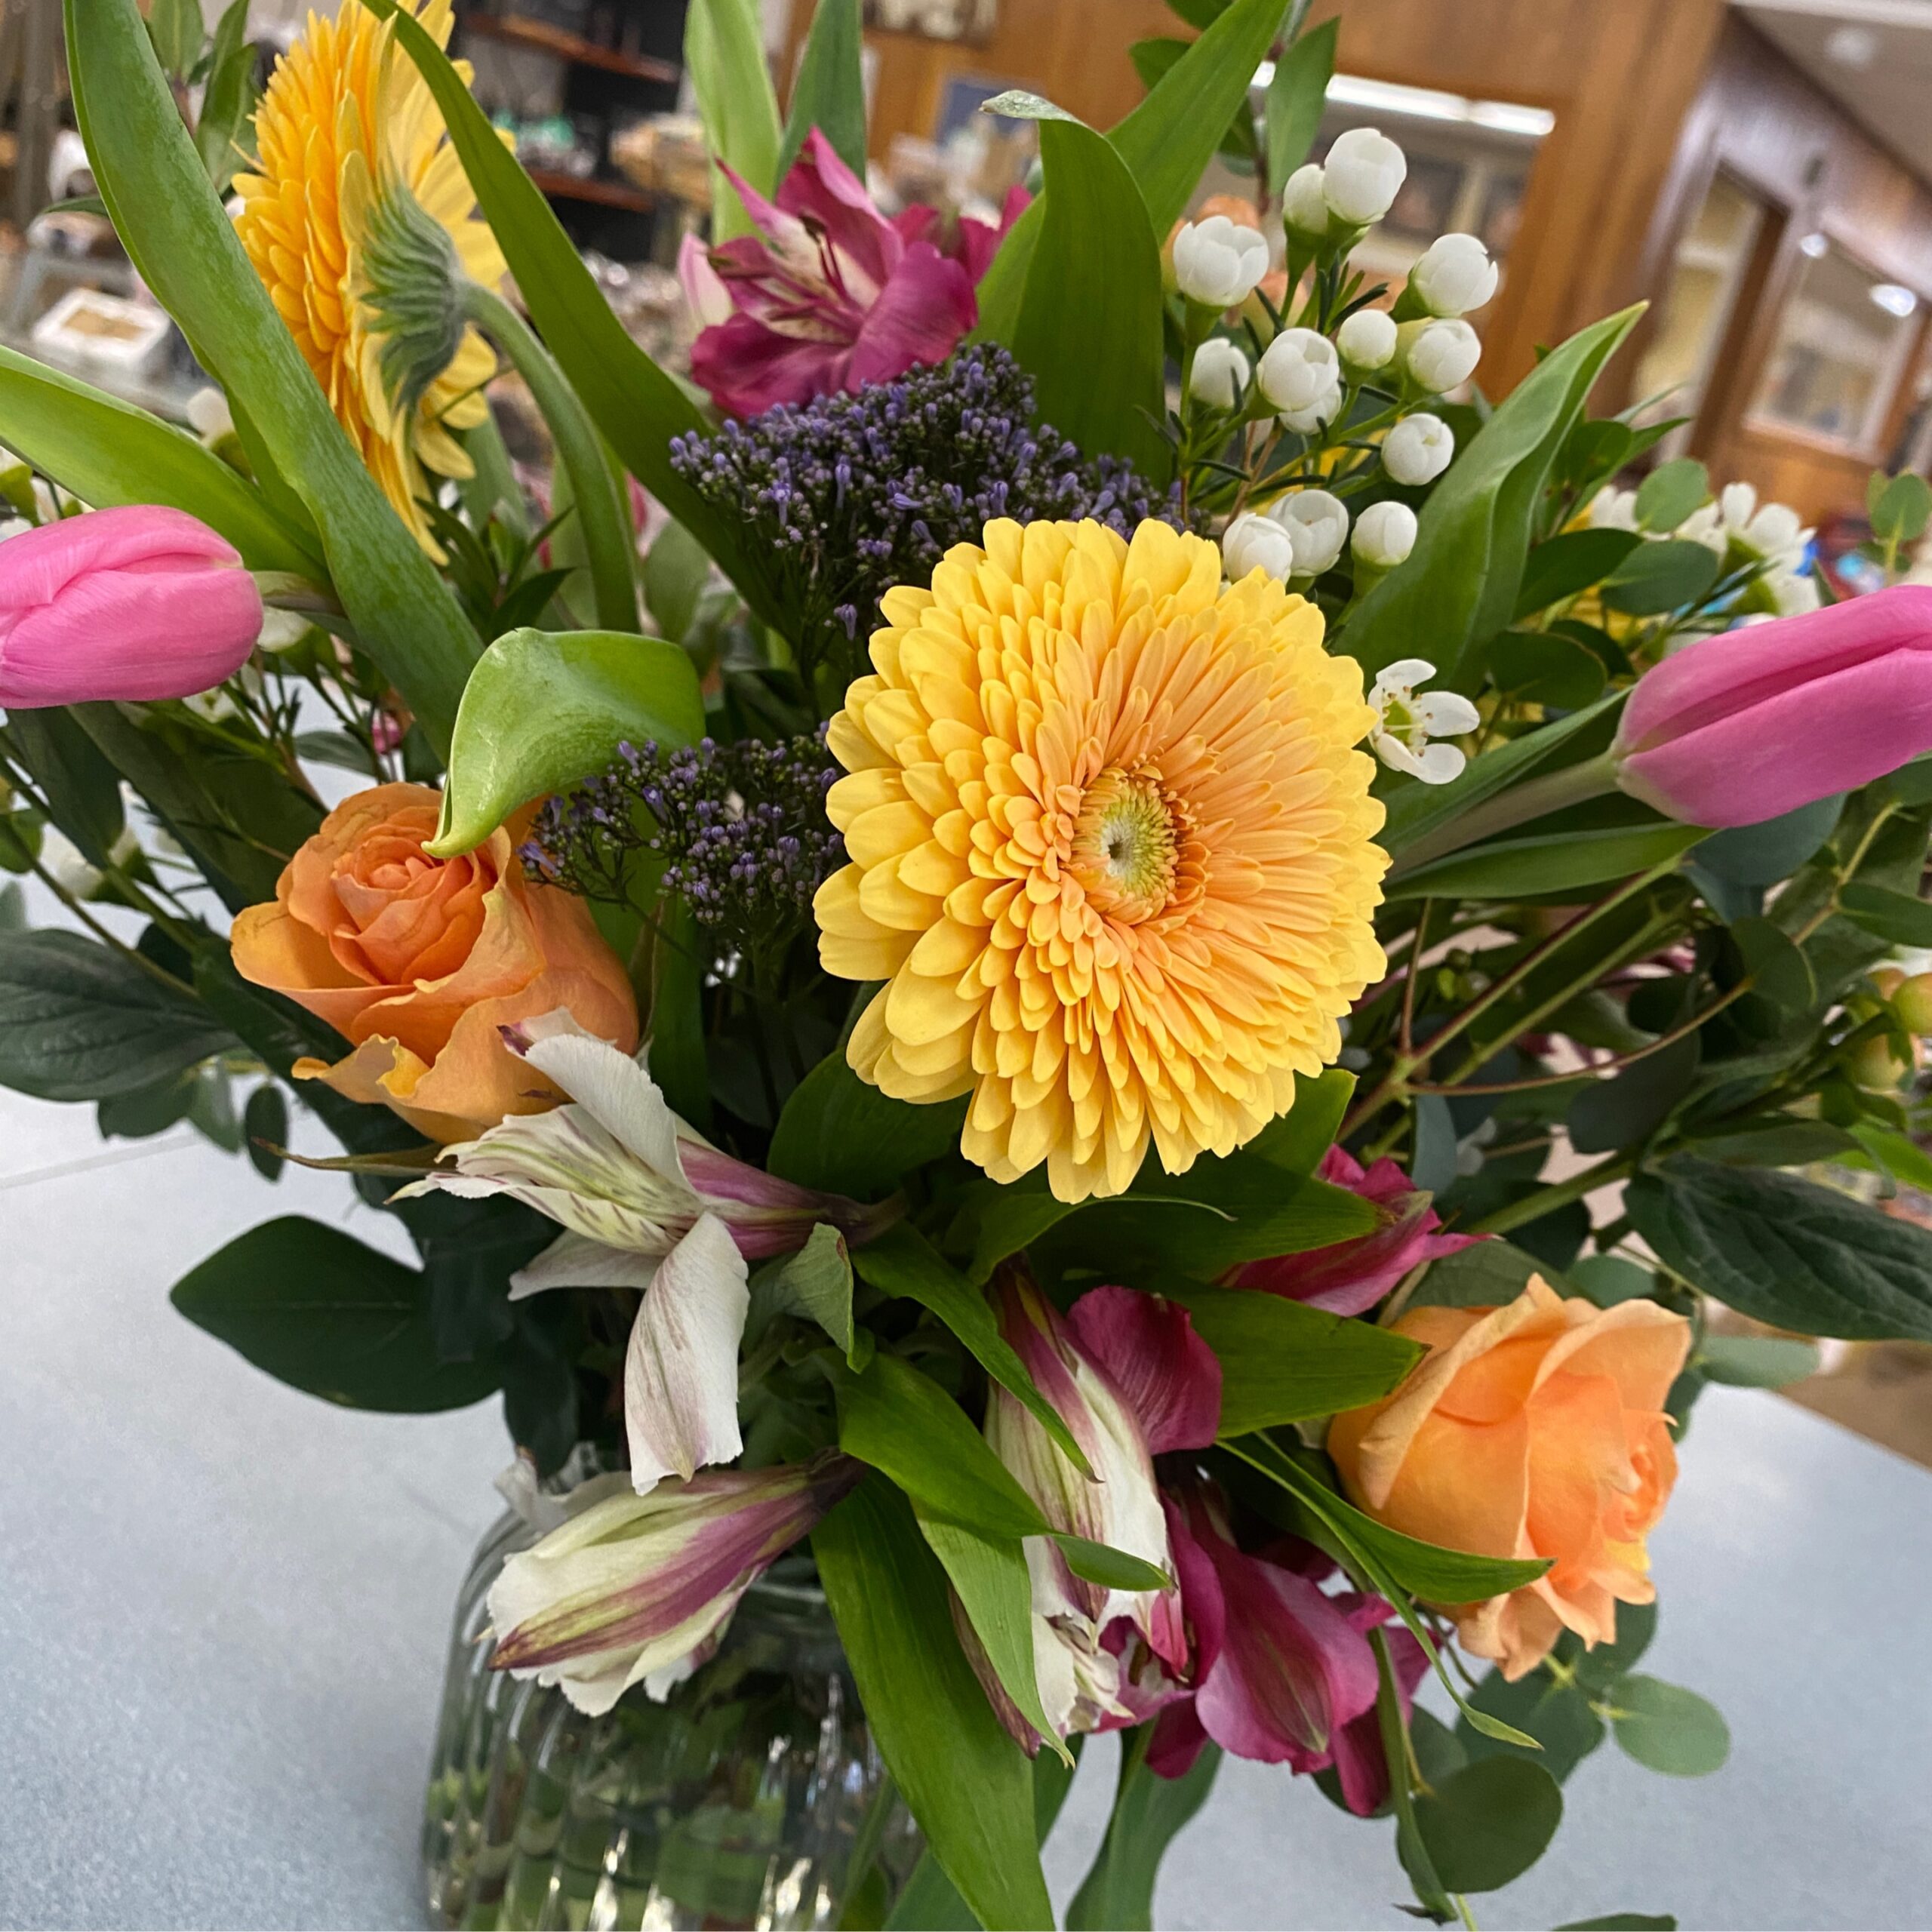 Flowers-Seasonal Surprise with Vase